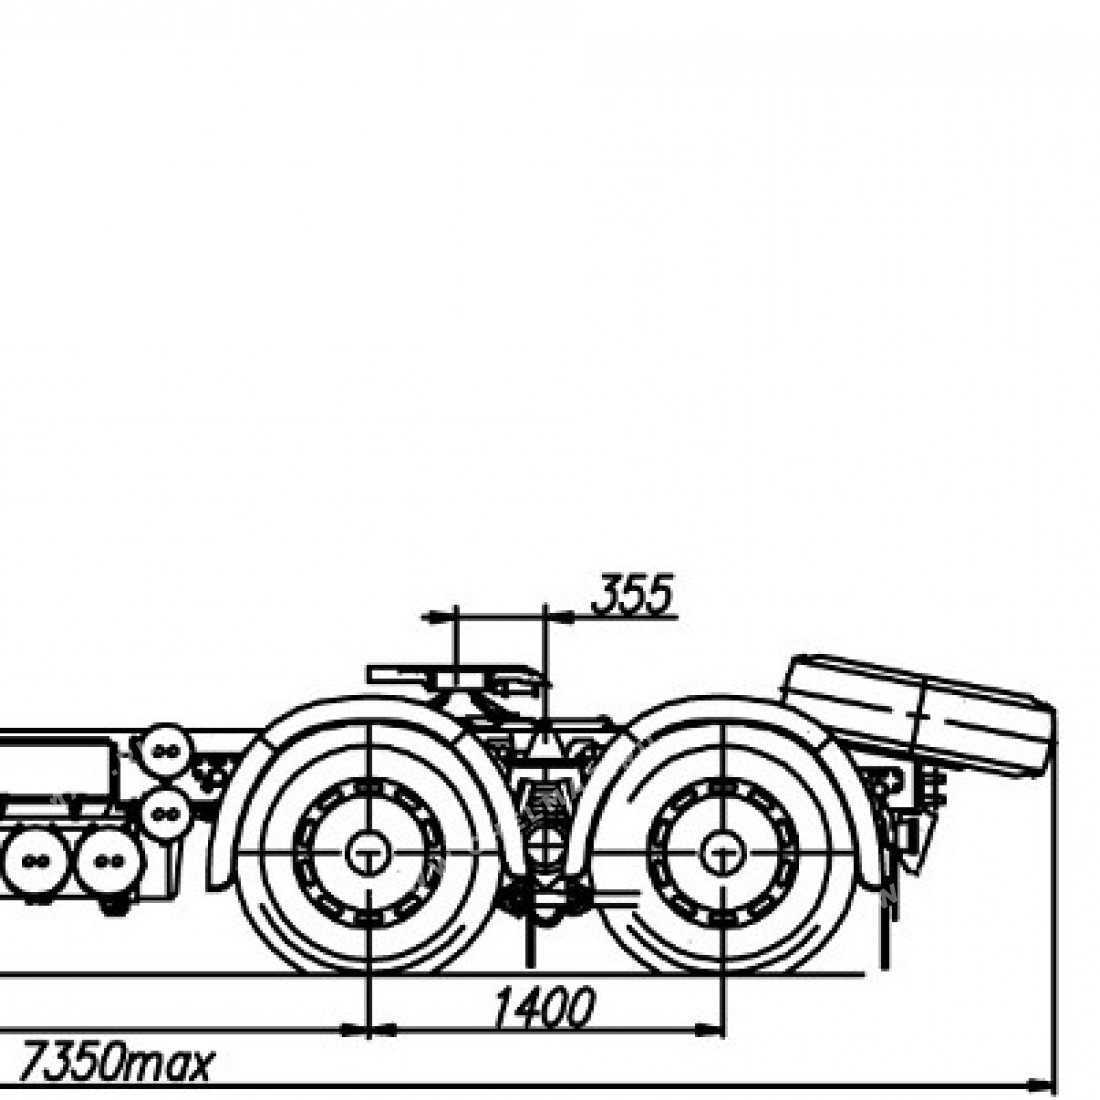 Технические характеристики седельного тягача маз-6430 и 8 популярных модификаций